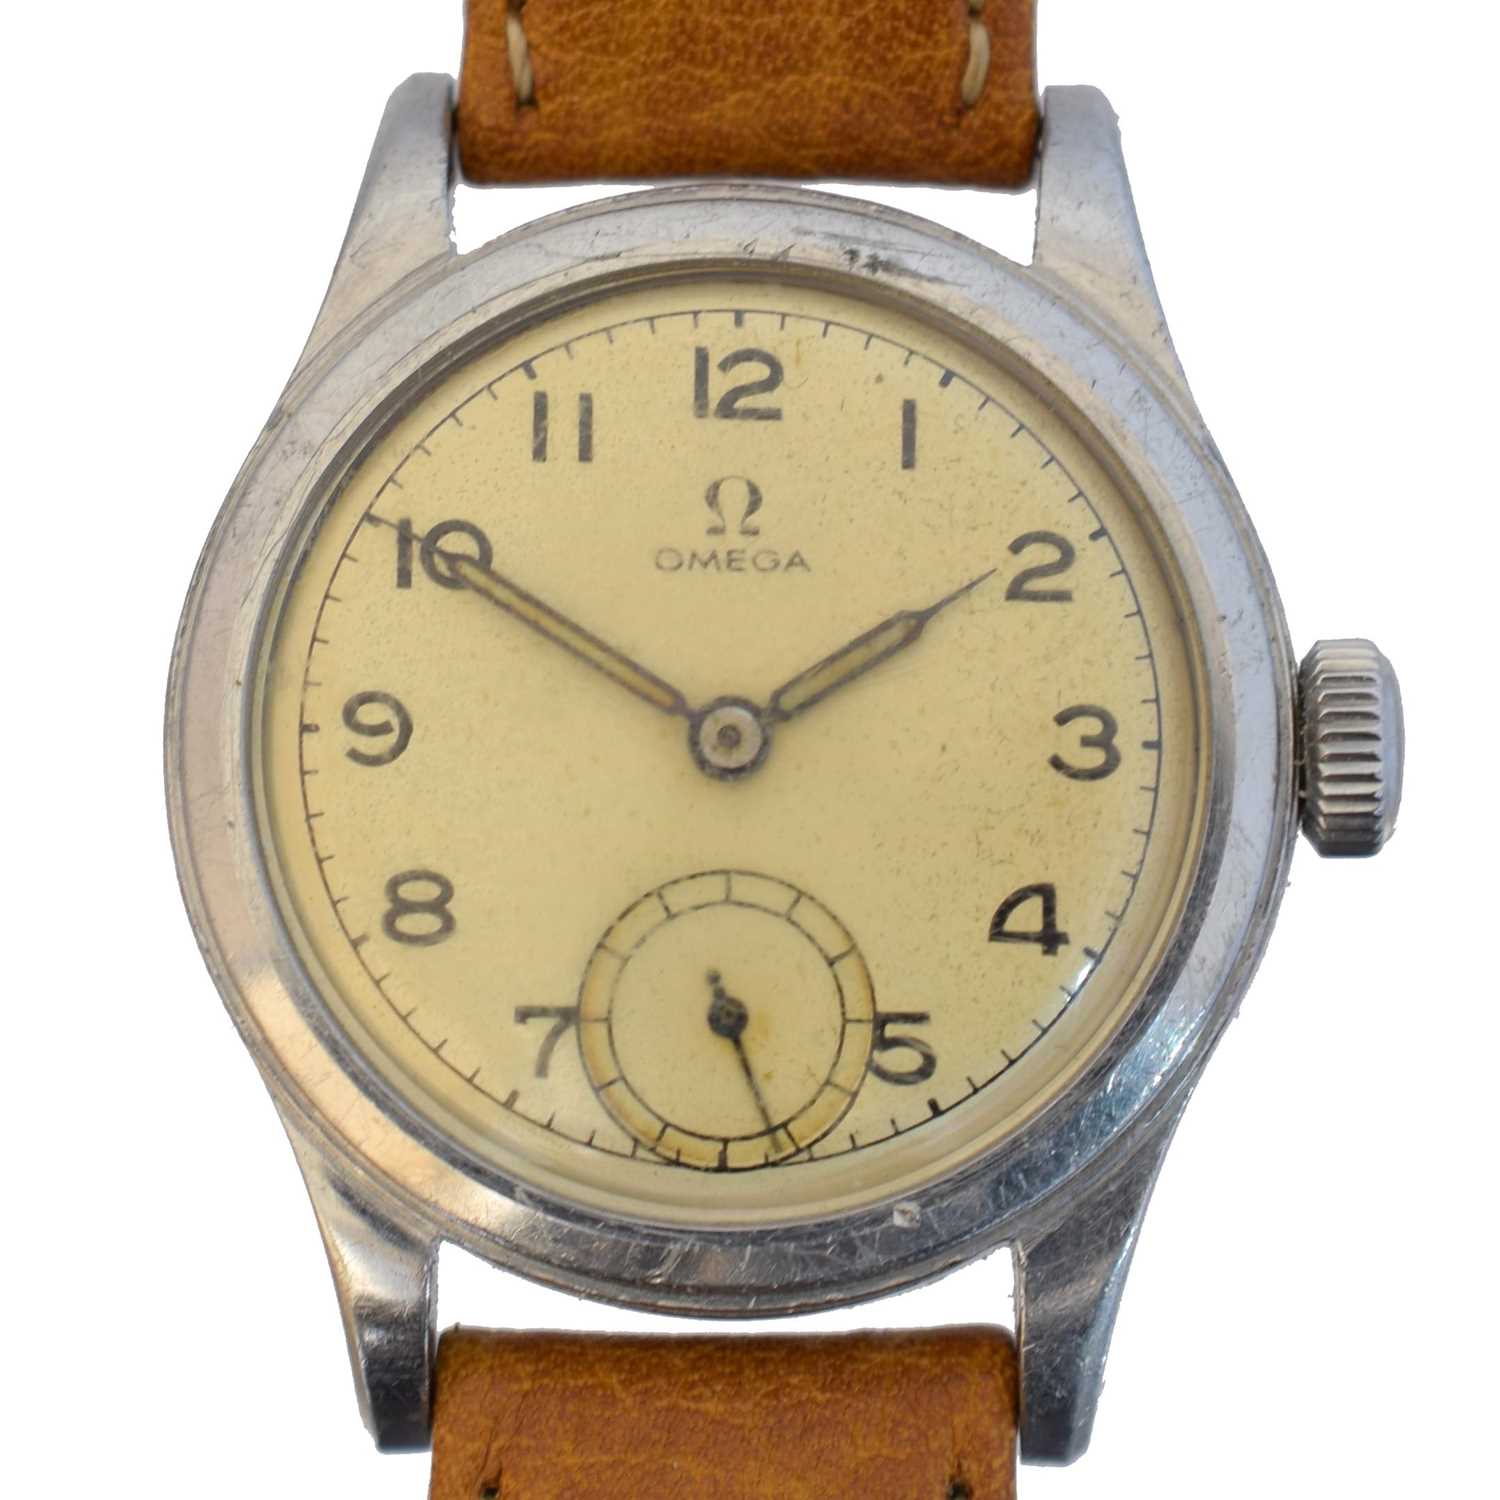 Lot A 1940s Omega British Civil Service India manual wind wristwatch